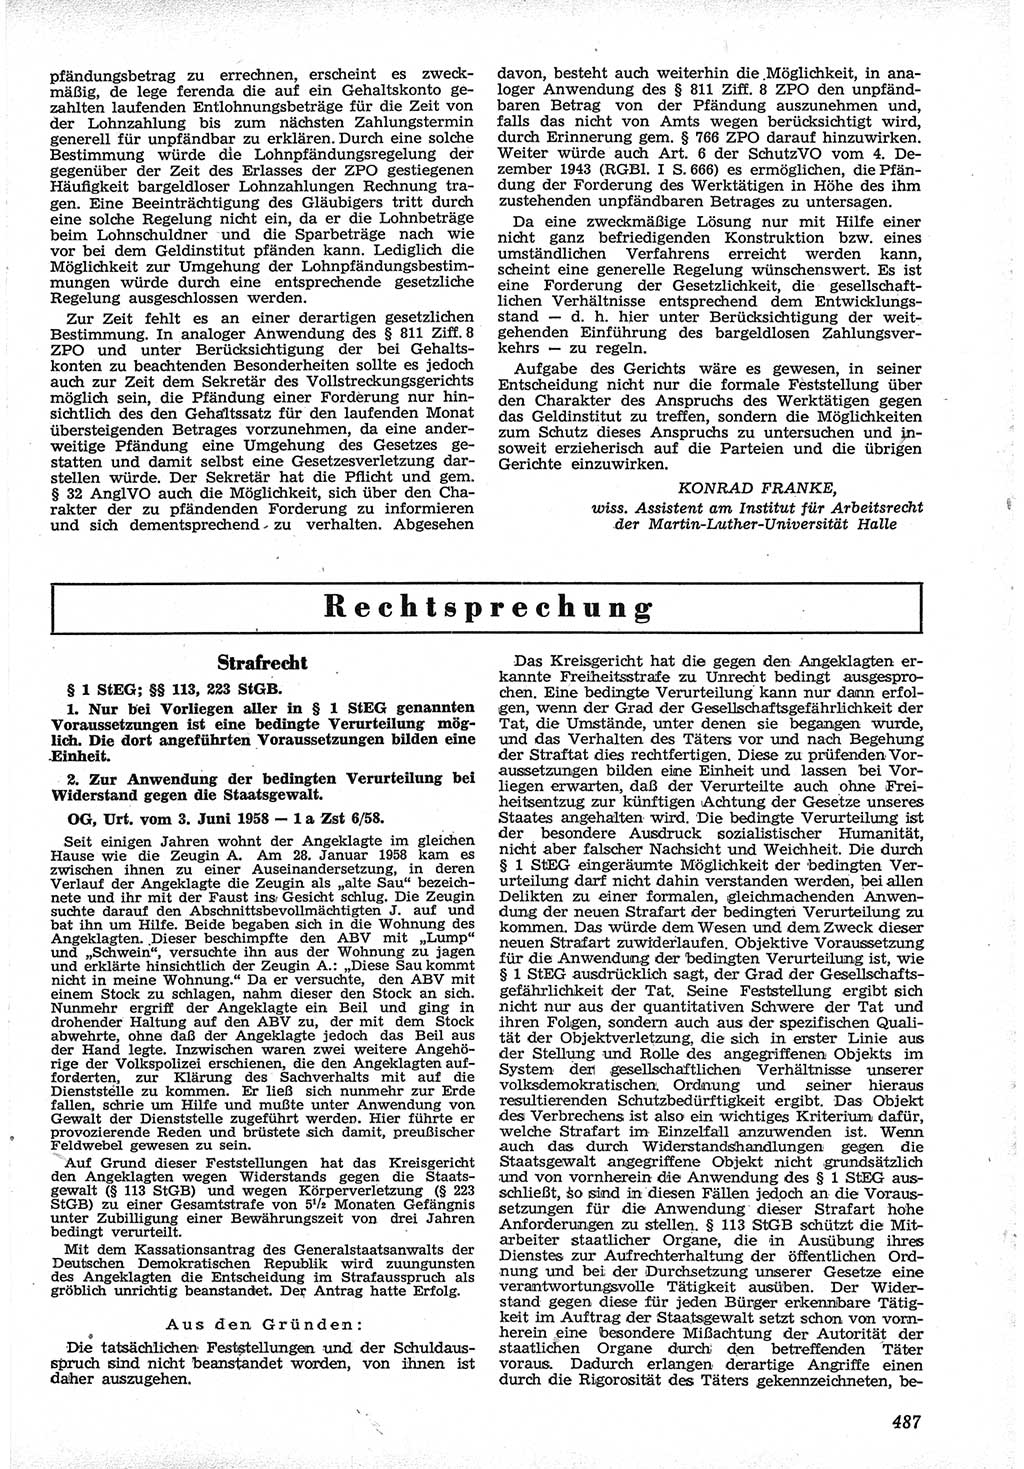 Neue Justiz (NJ), Zeitschrift für Recht und Rechtswissenschaft [Deutsche Demokratische Republik (DDR)], 12. Jahrgang 1958, Seite 487 (NJ DDR 1958, S. 487)